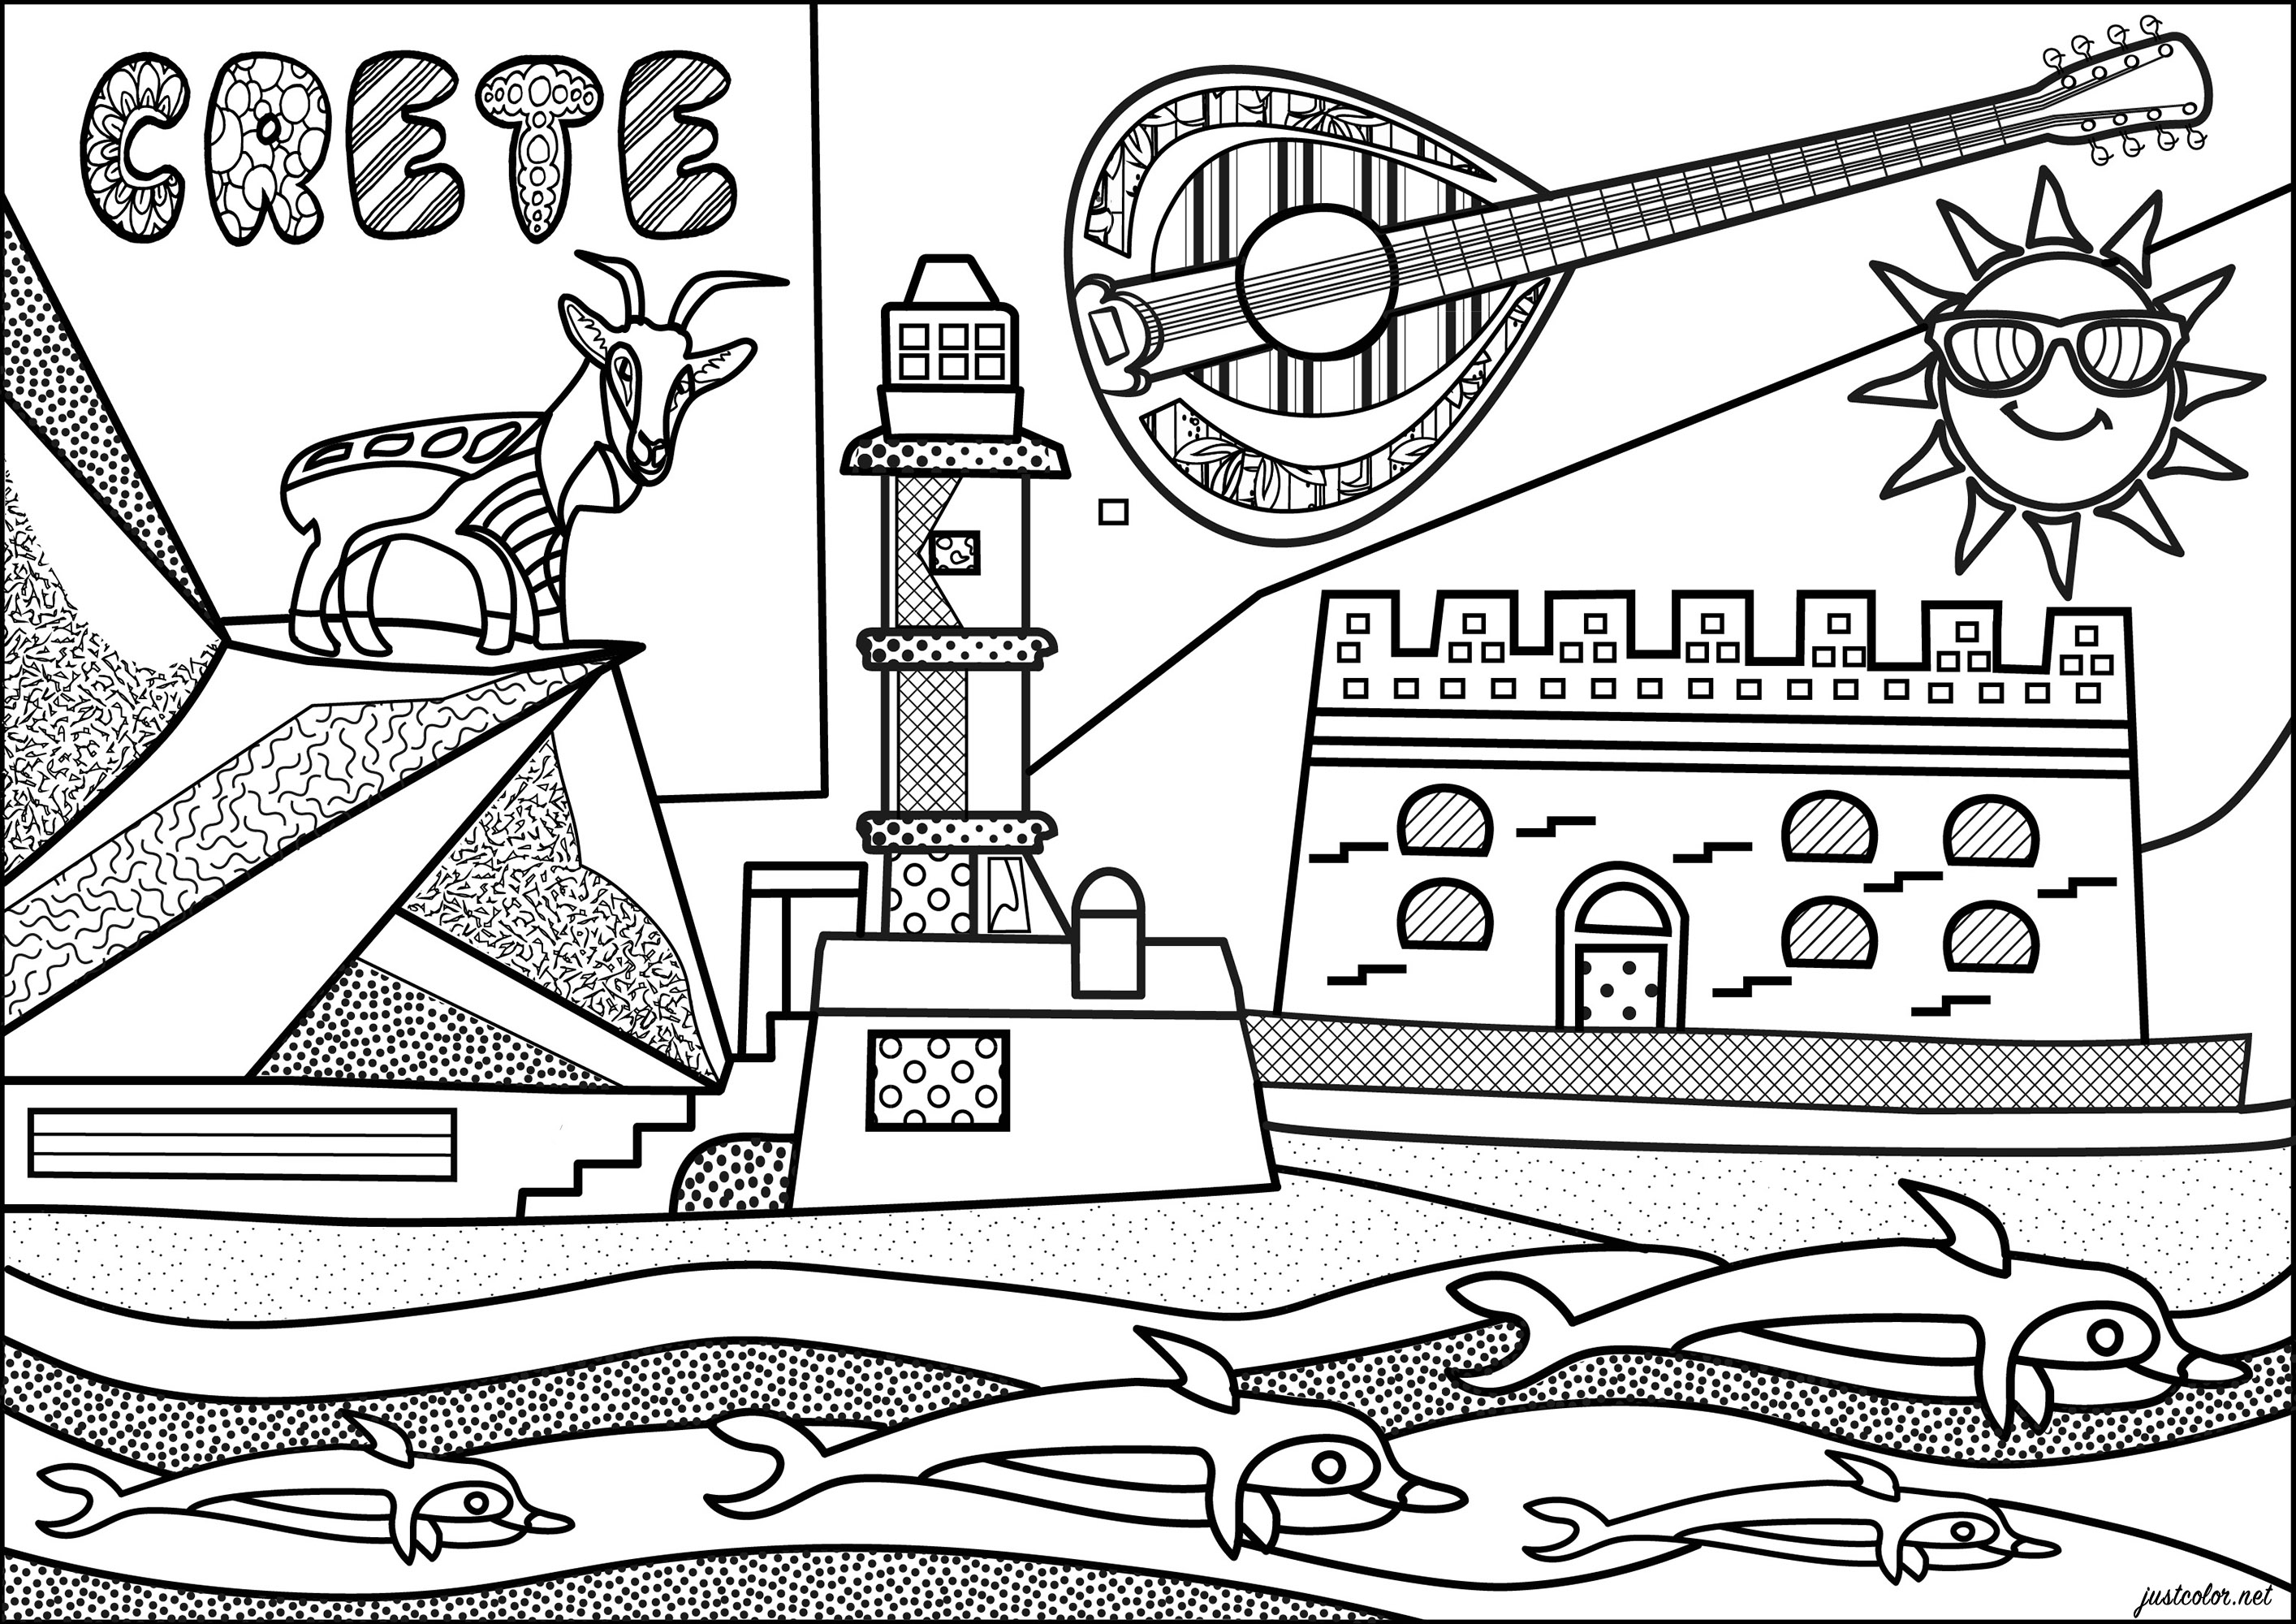 Coloração inspirada na ilha grega de Creta, com vários monumentos típicos. Esta página para colorir apresenta a fortaleza de Heraklion, o farol egípcio de Chania e uma famosa cabra Kri-kri.Uma ilustração original inspirada no estilo 'Naïve art', Artista : Morgan